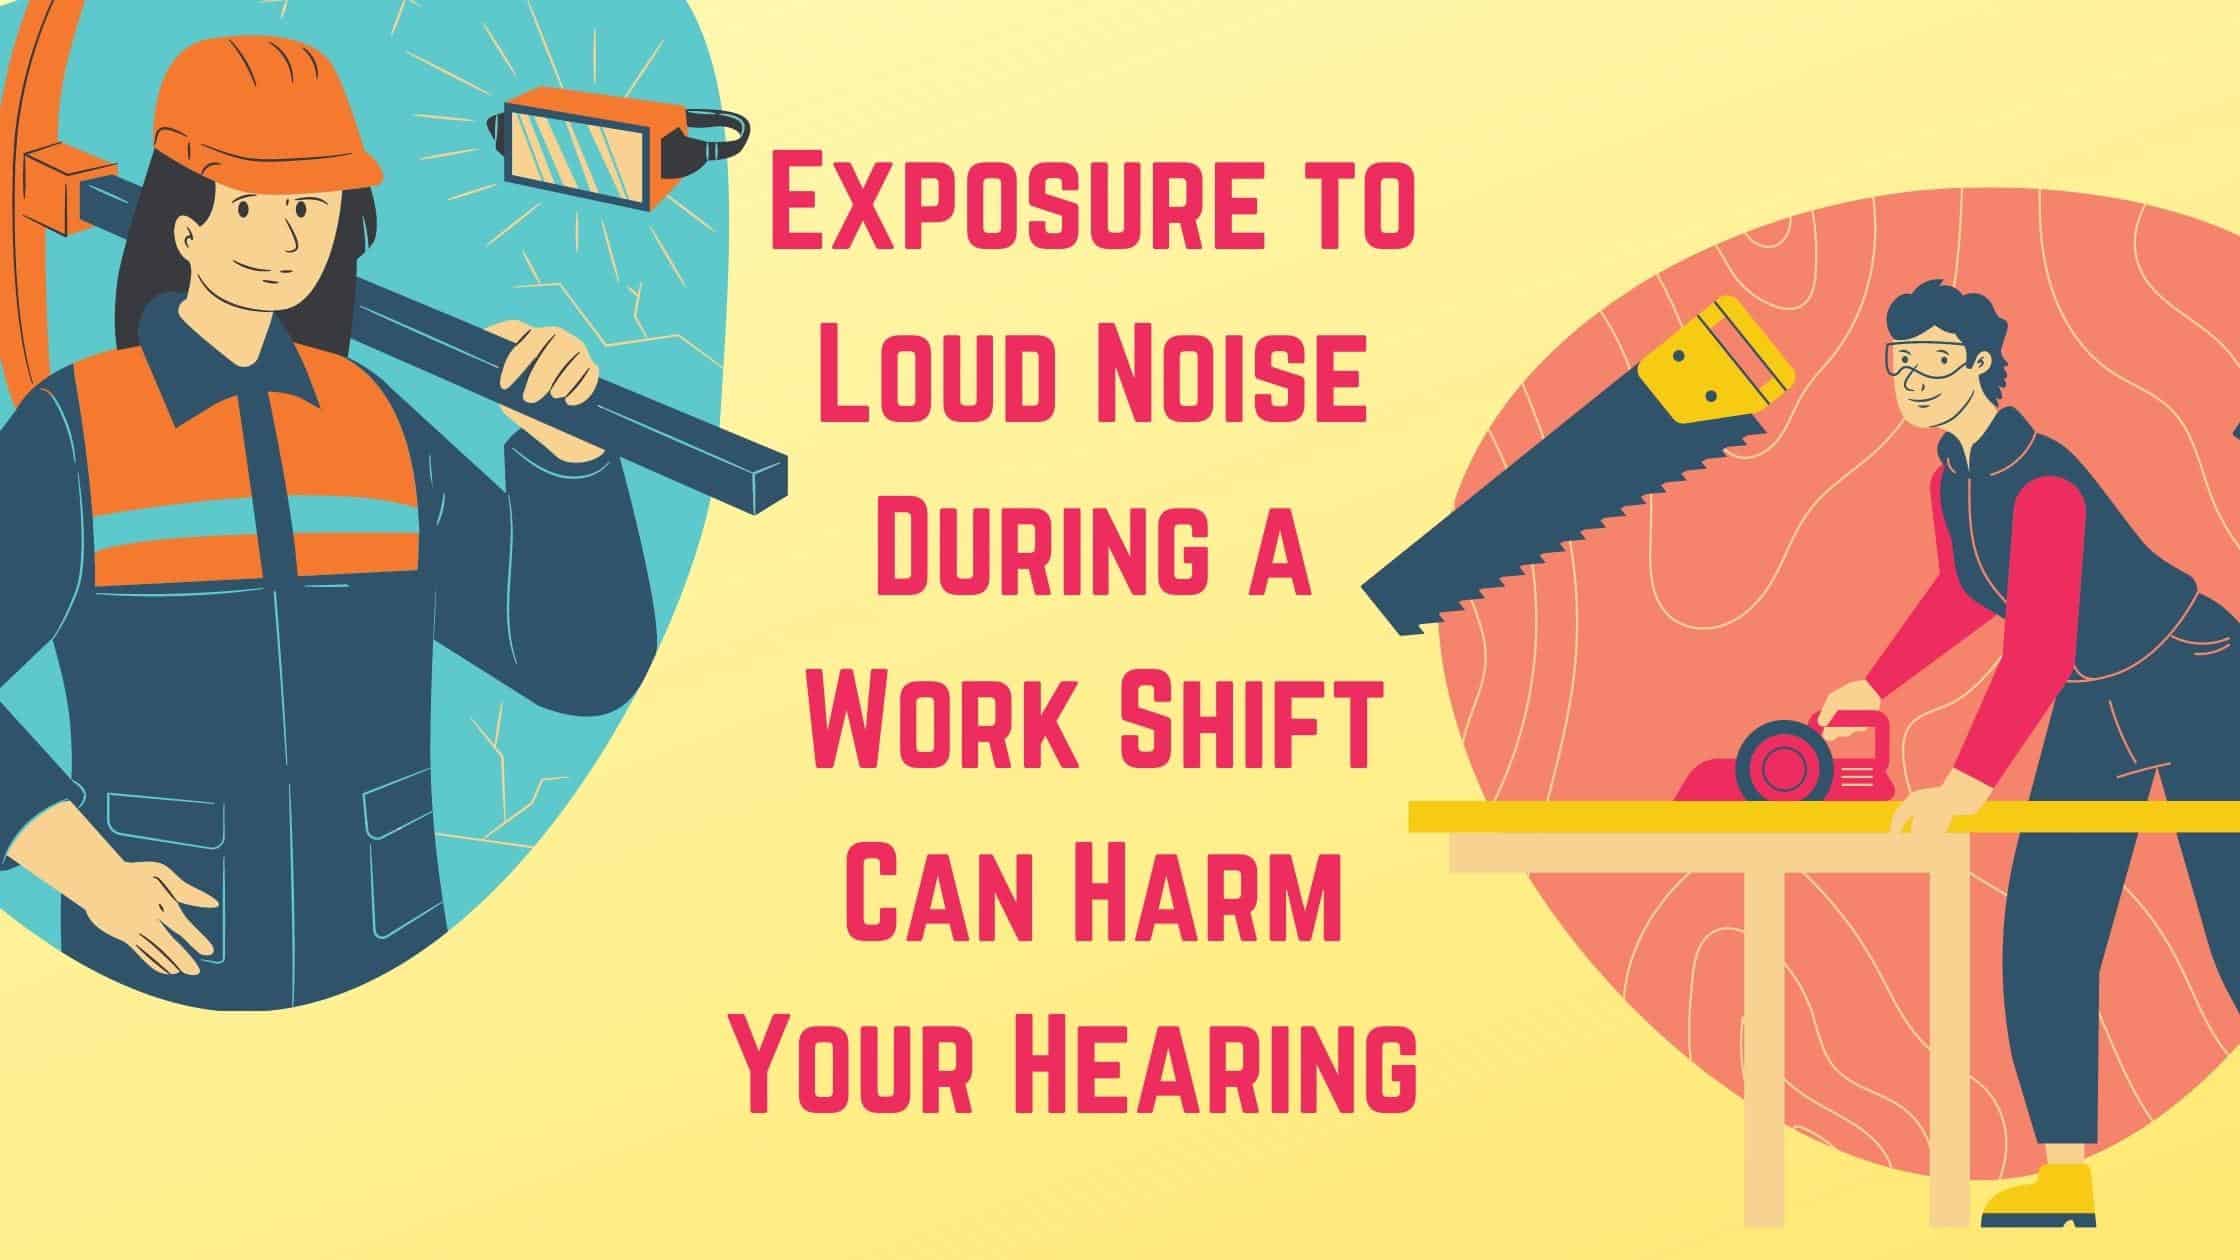 loud noise